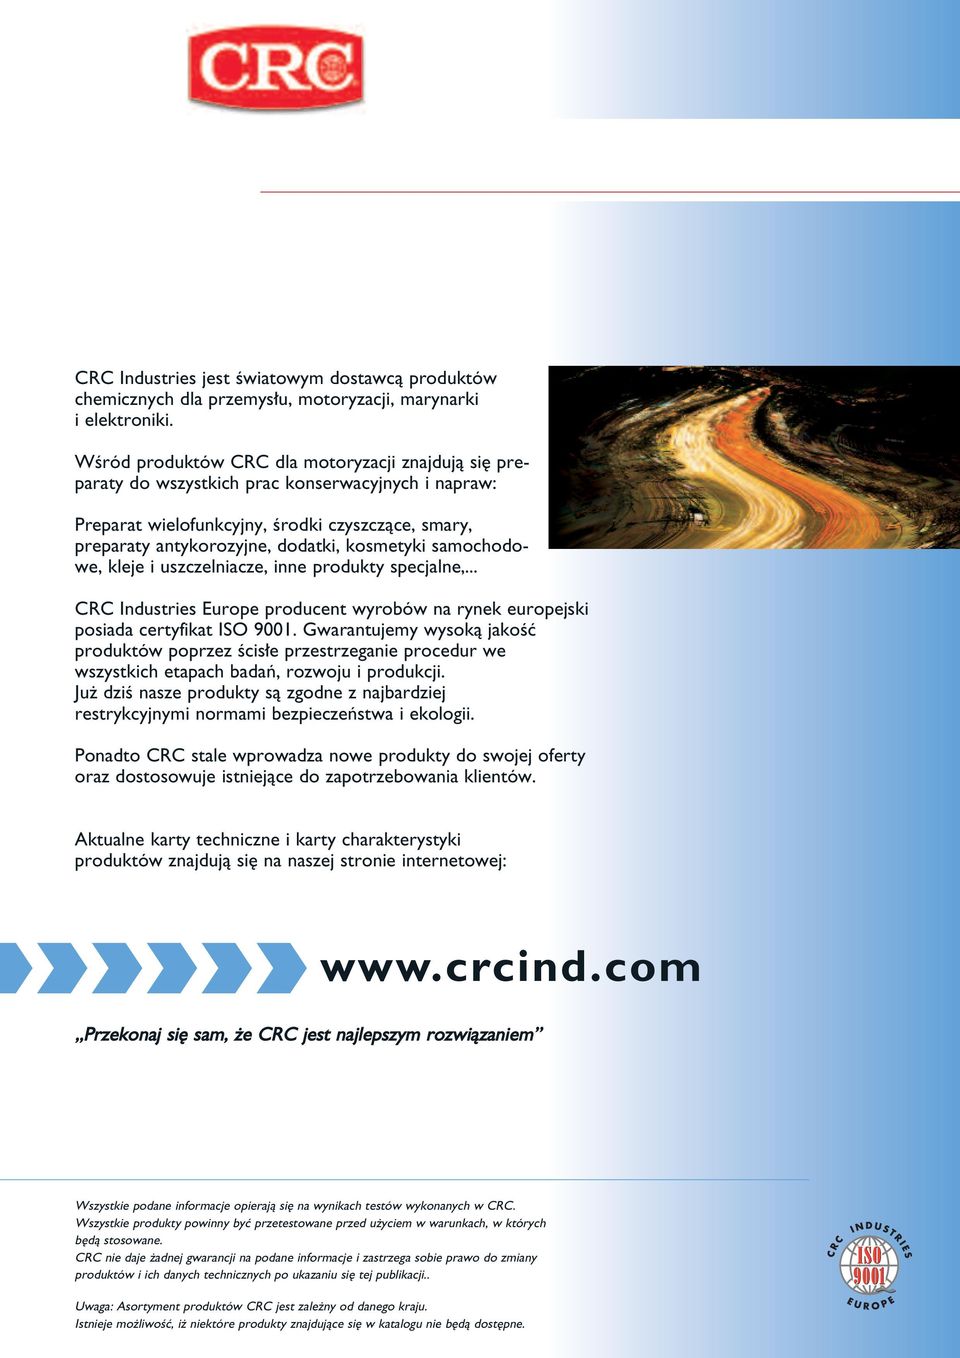 samochodowe, kleje i uszczelniacze, inne produkty specjalne,... CRC Industries Europe producent wyrobów na rynek europejski posiada certyfikat ISO 9001.